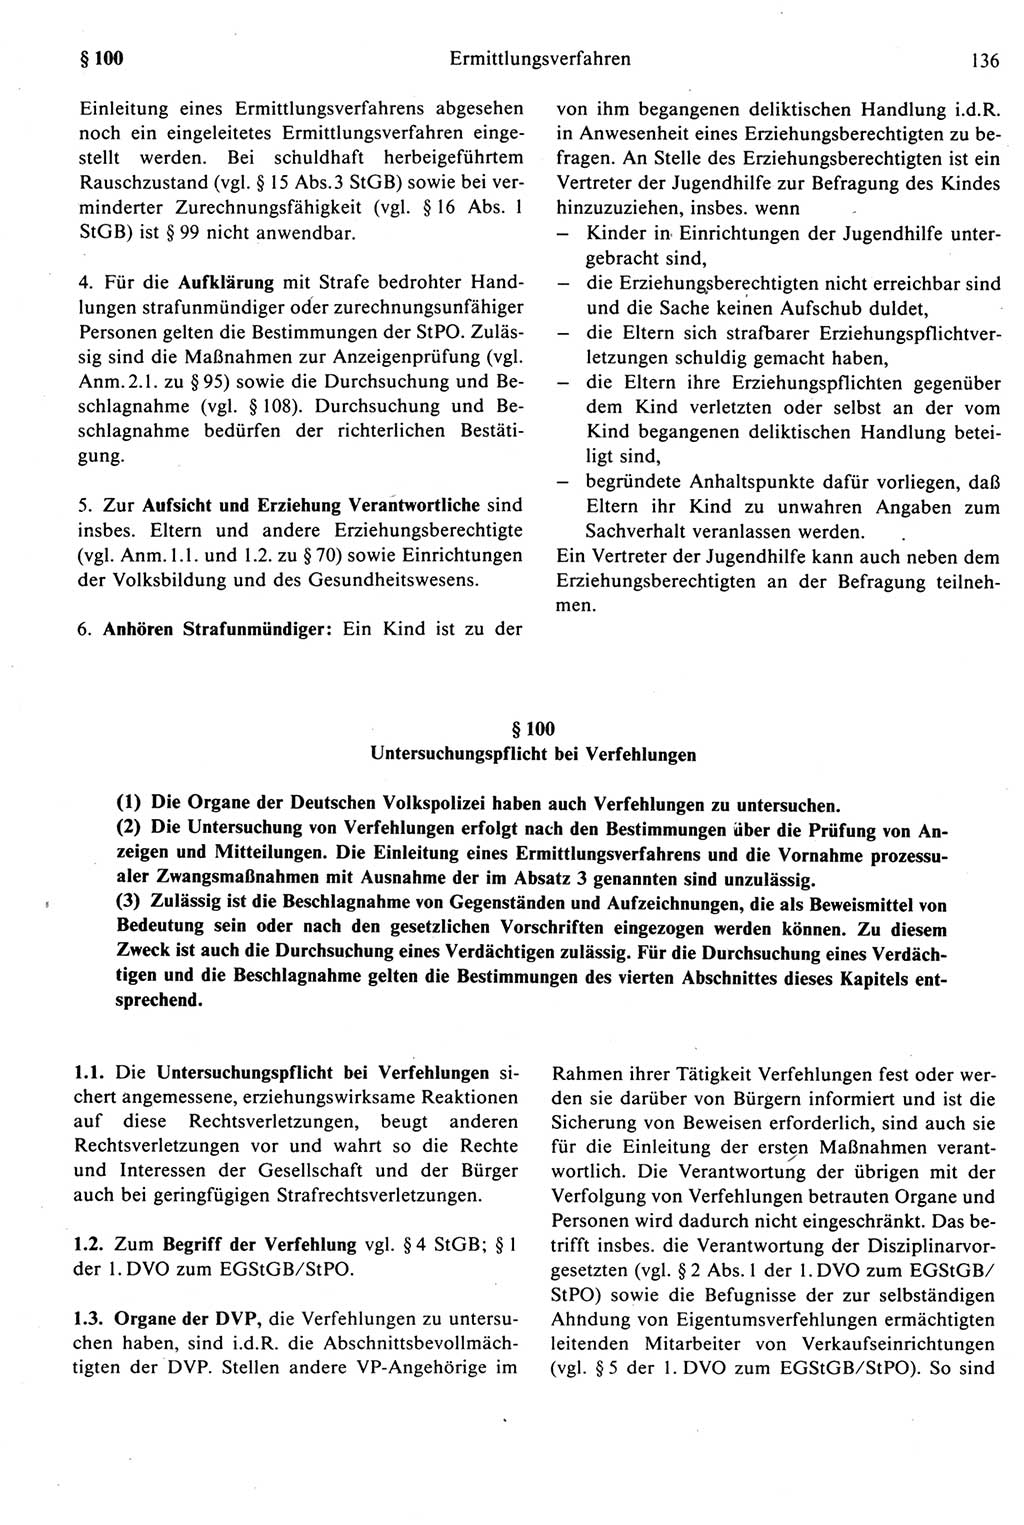 Strafprozeßrecht der DDR [Deutsche Demokratische Republik], Kommentar zur Strafprozeßordnung (StPO) 1987, Seite 136 (Strafprozeßr. DDR Komm. StPO 1987, S. 136)